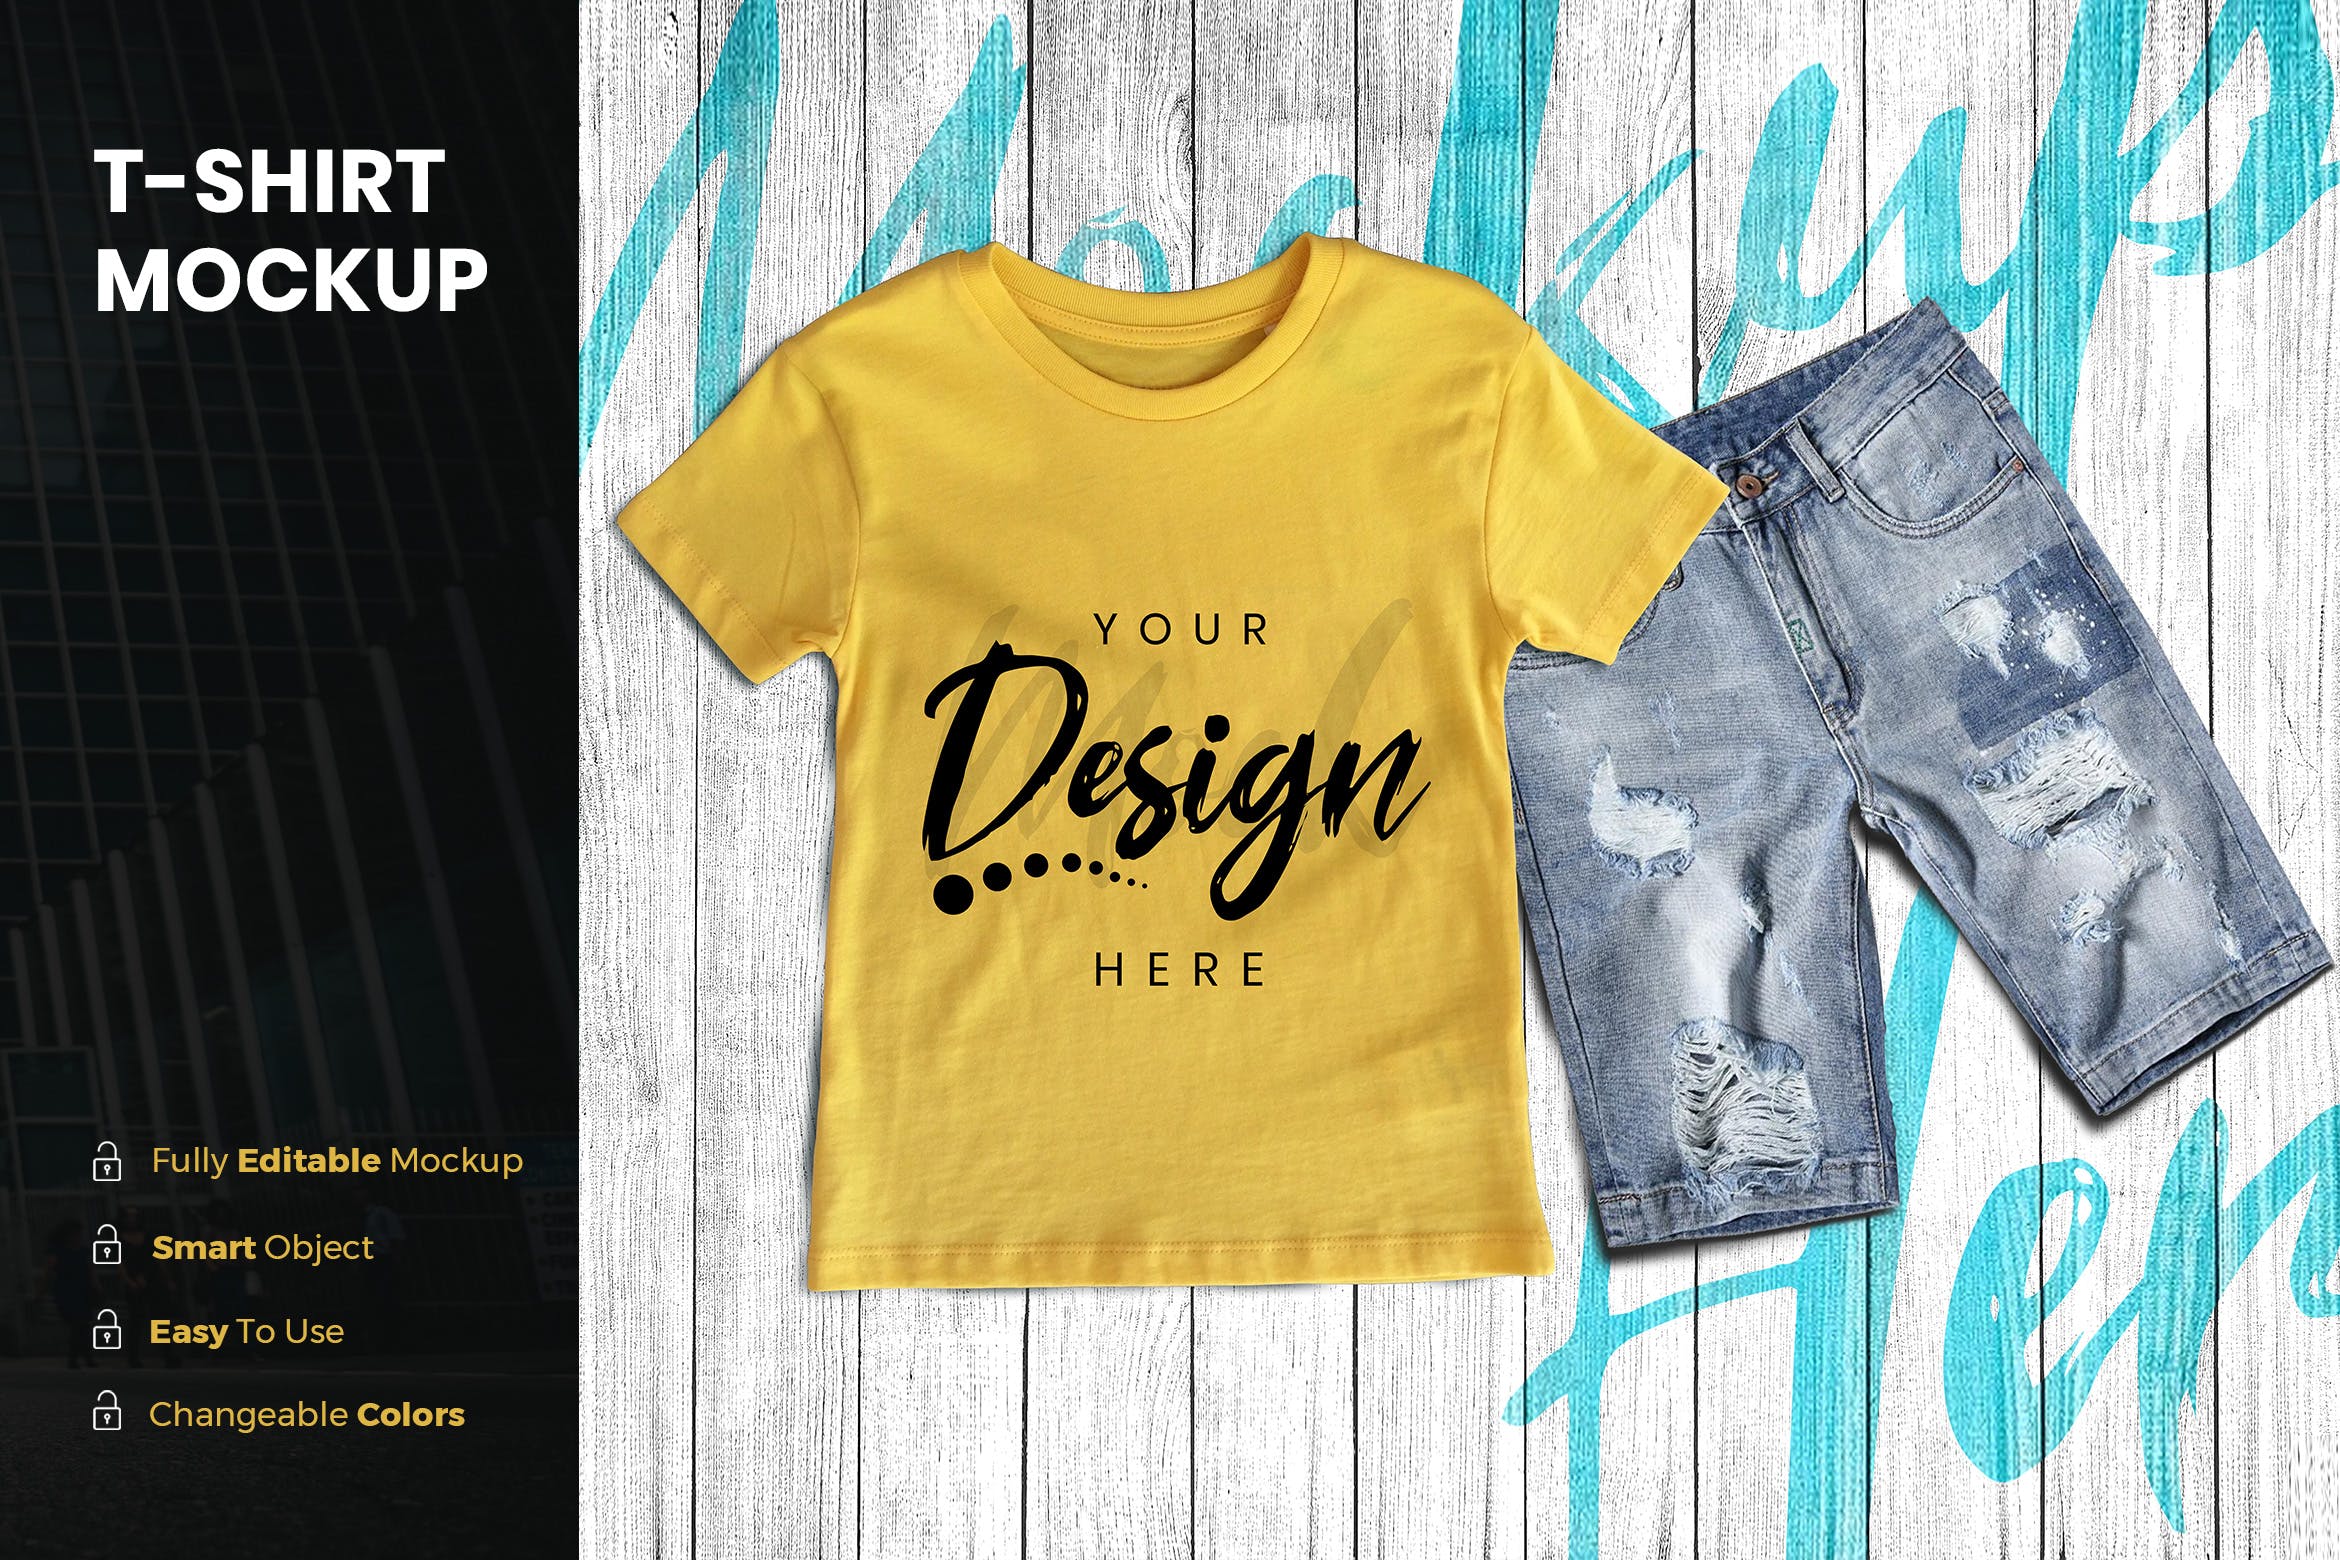 男童印花T恤图案设计预览样机素材库精选模板 TShirt Mockup插图